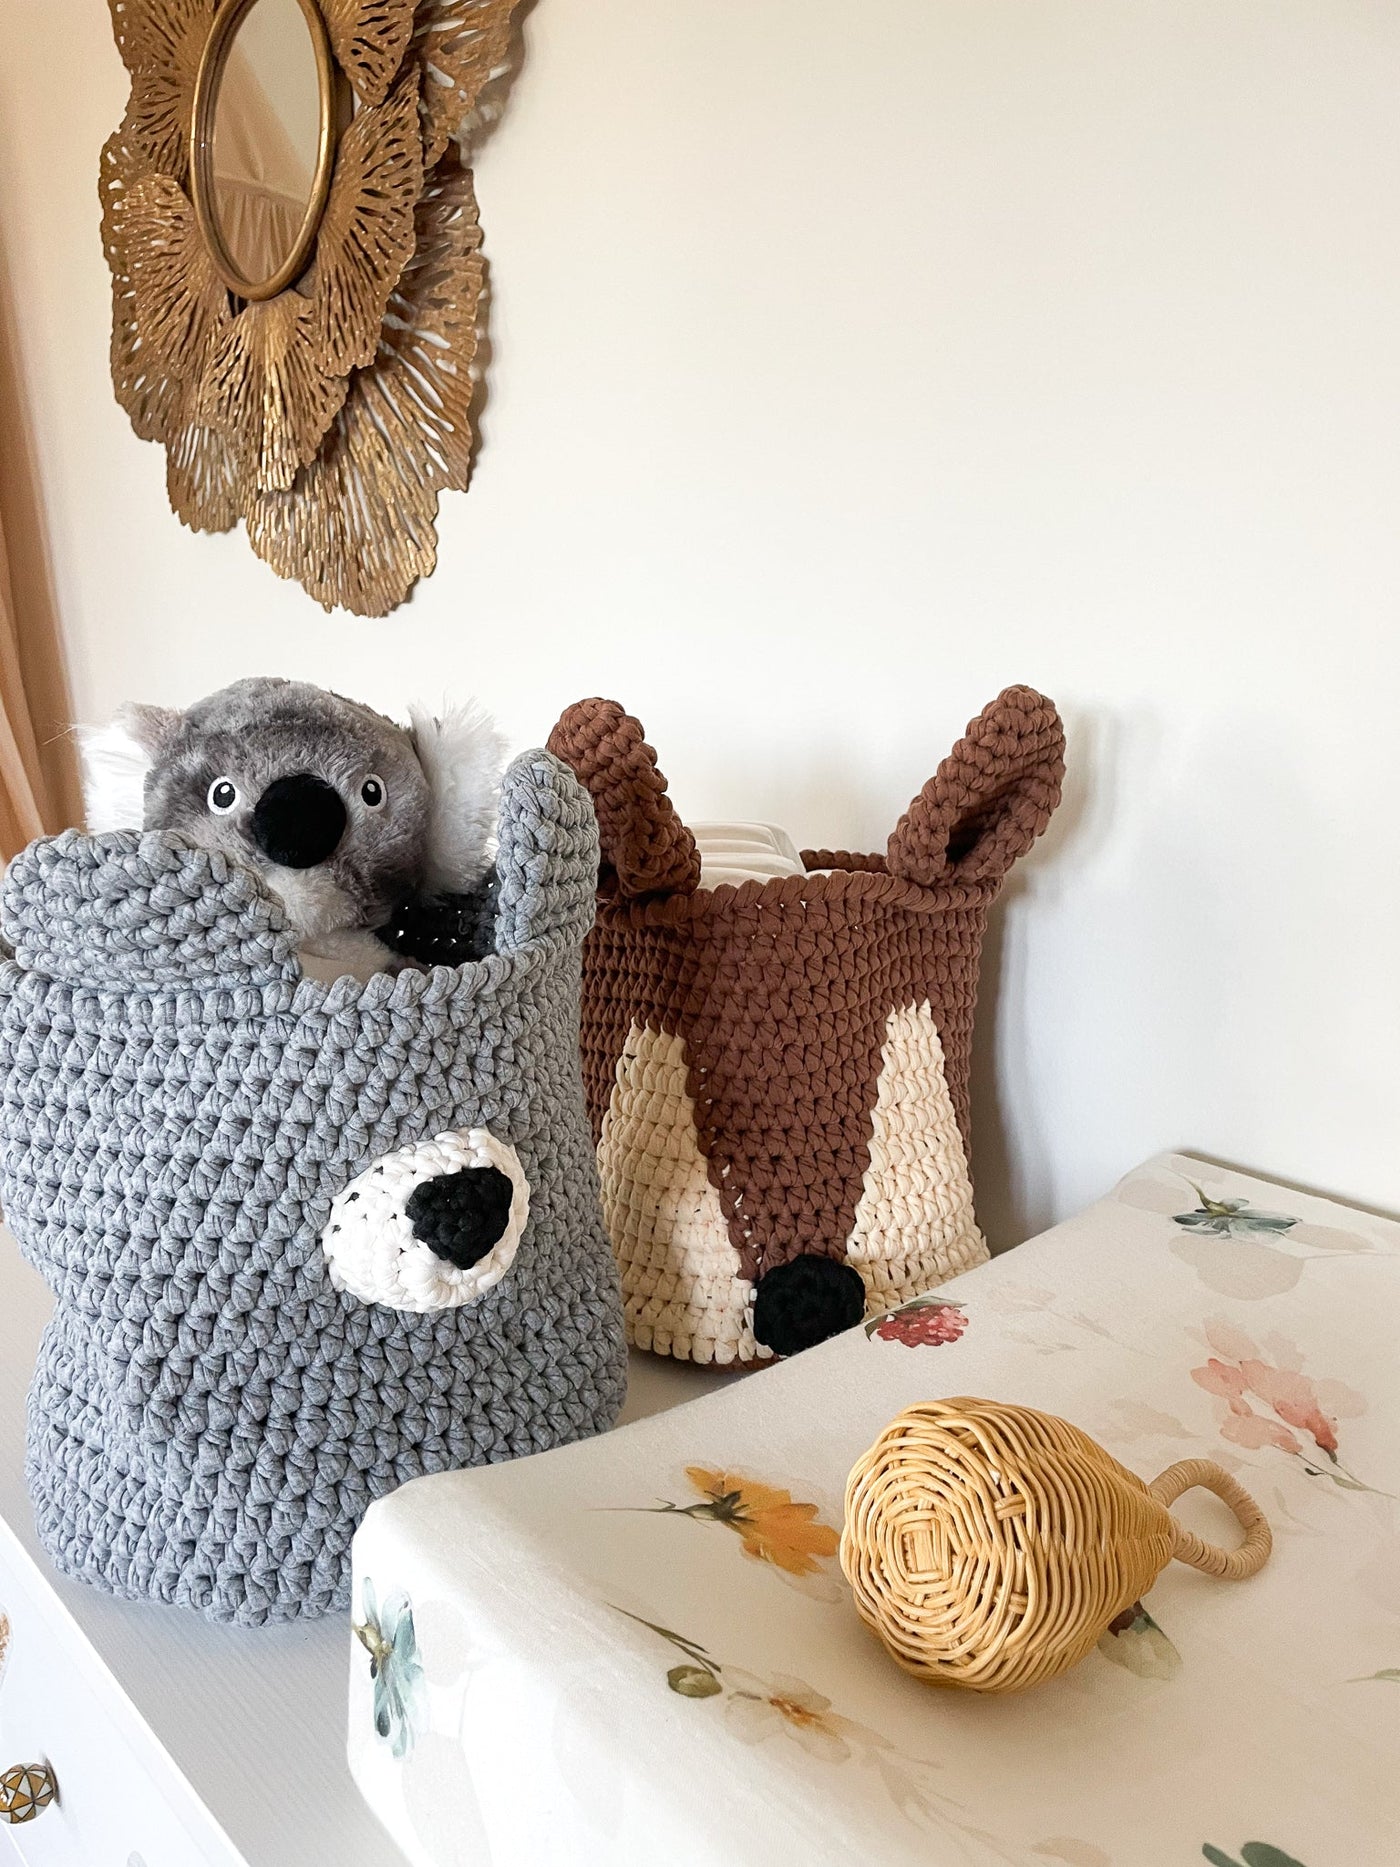 Handmade Crochet Storage Basket | Bear Jabaloo